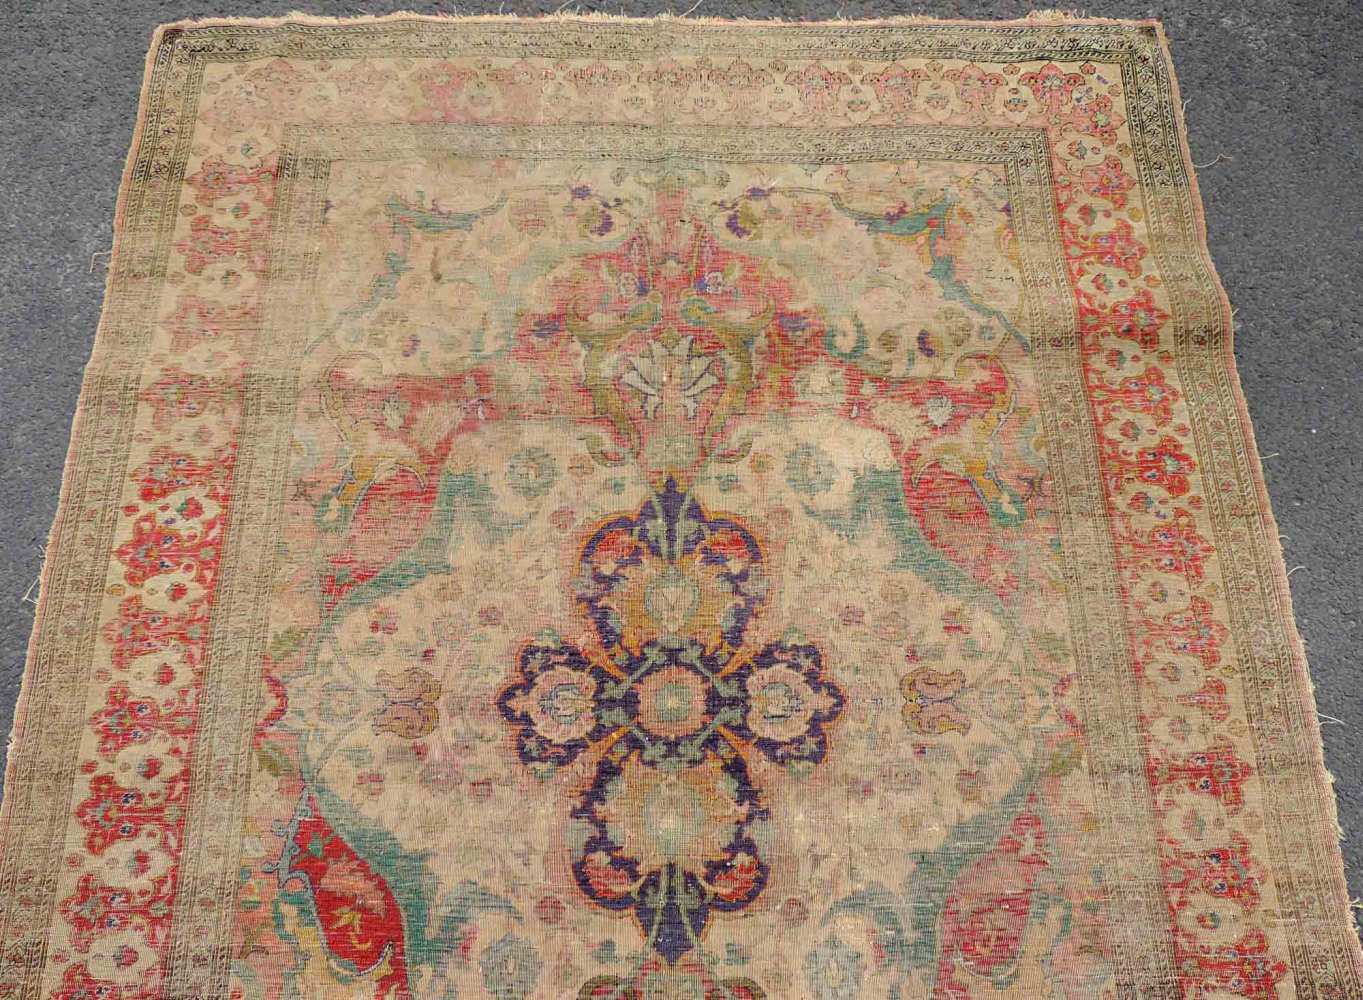 Safawiden Seidenteppich, Iran. Antik, 17. Jahrhundert. 162 cm x 116 cm. Handgeknüpft in Persien. - Image 4 of 6